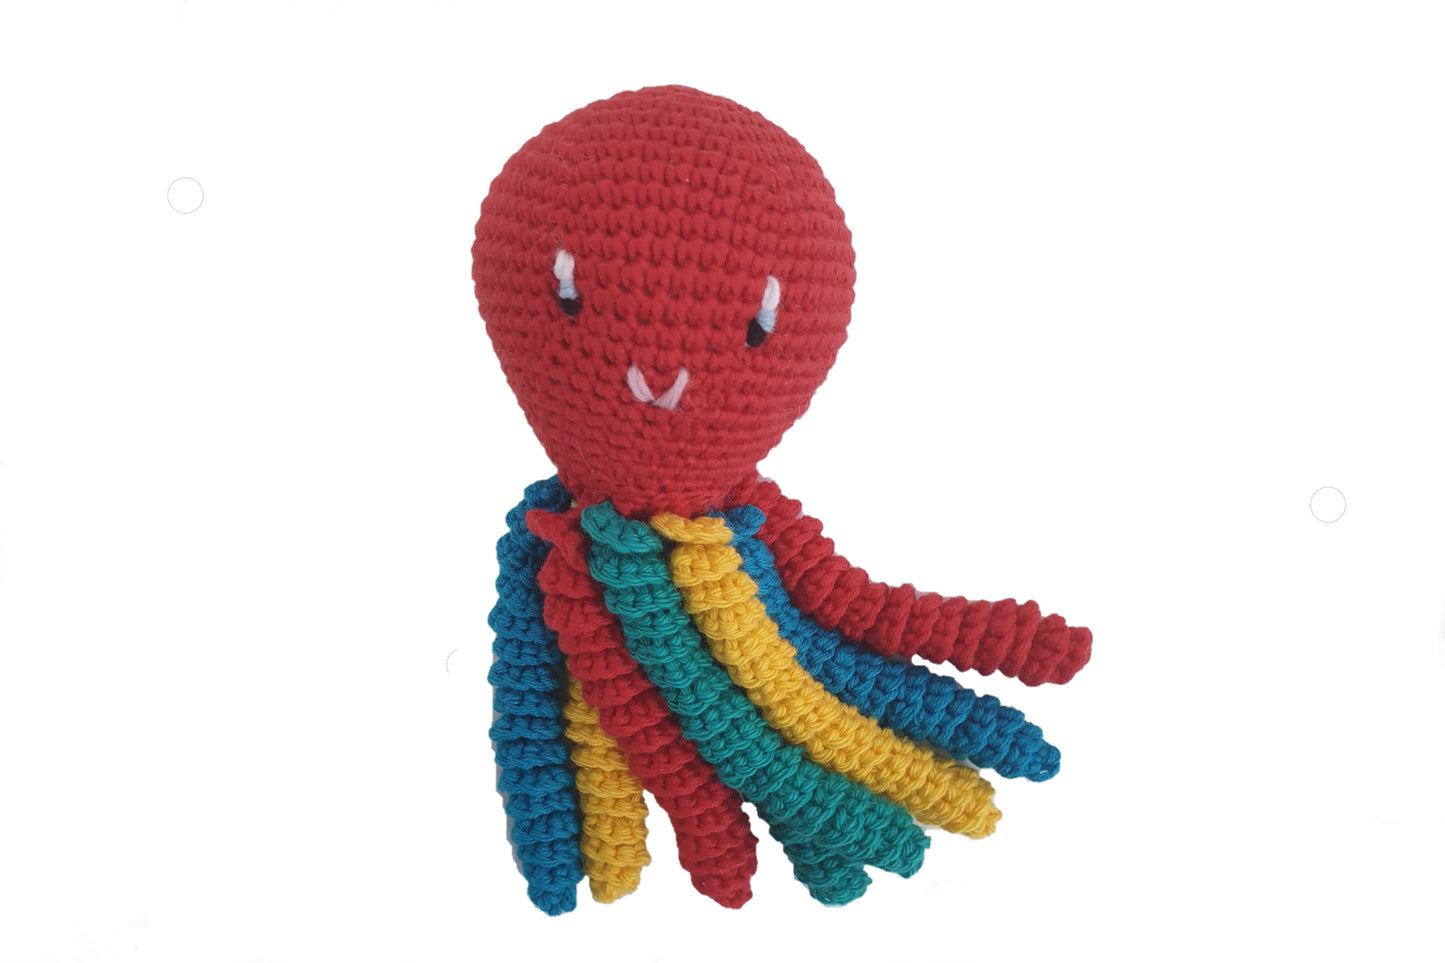 Pulpo de crochet en color rojo - multicolor.